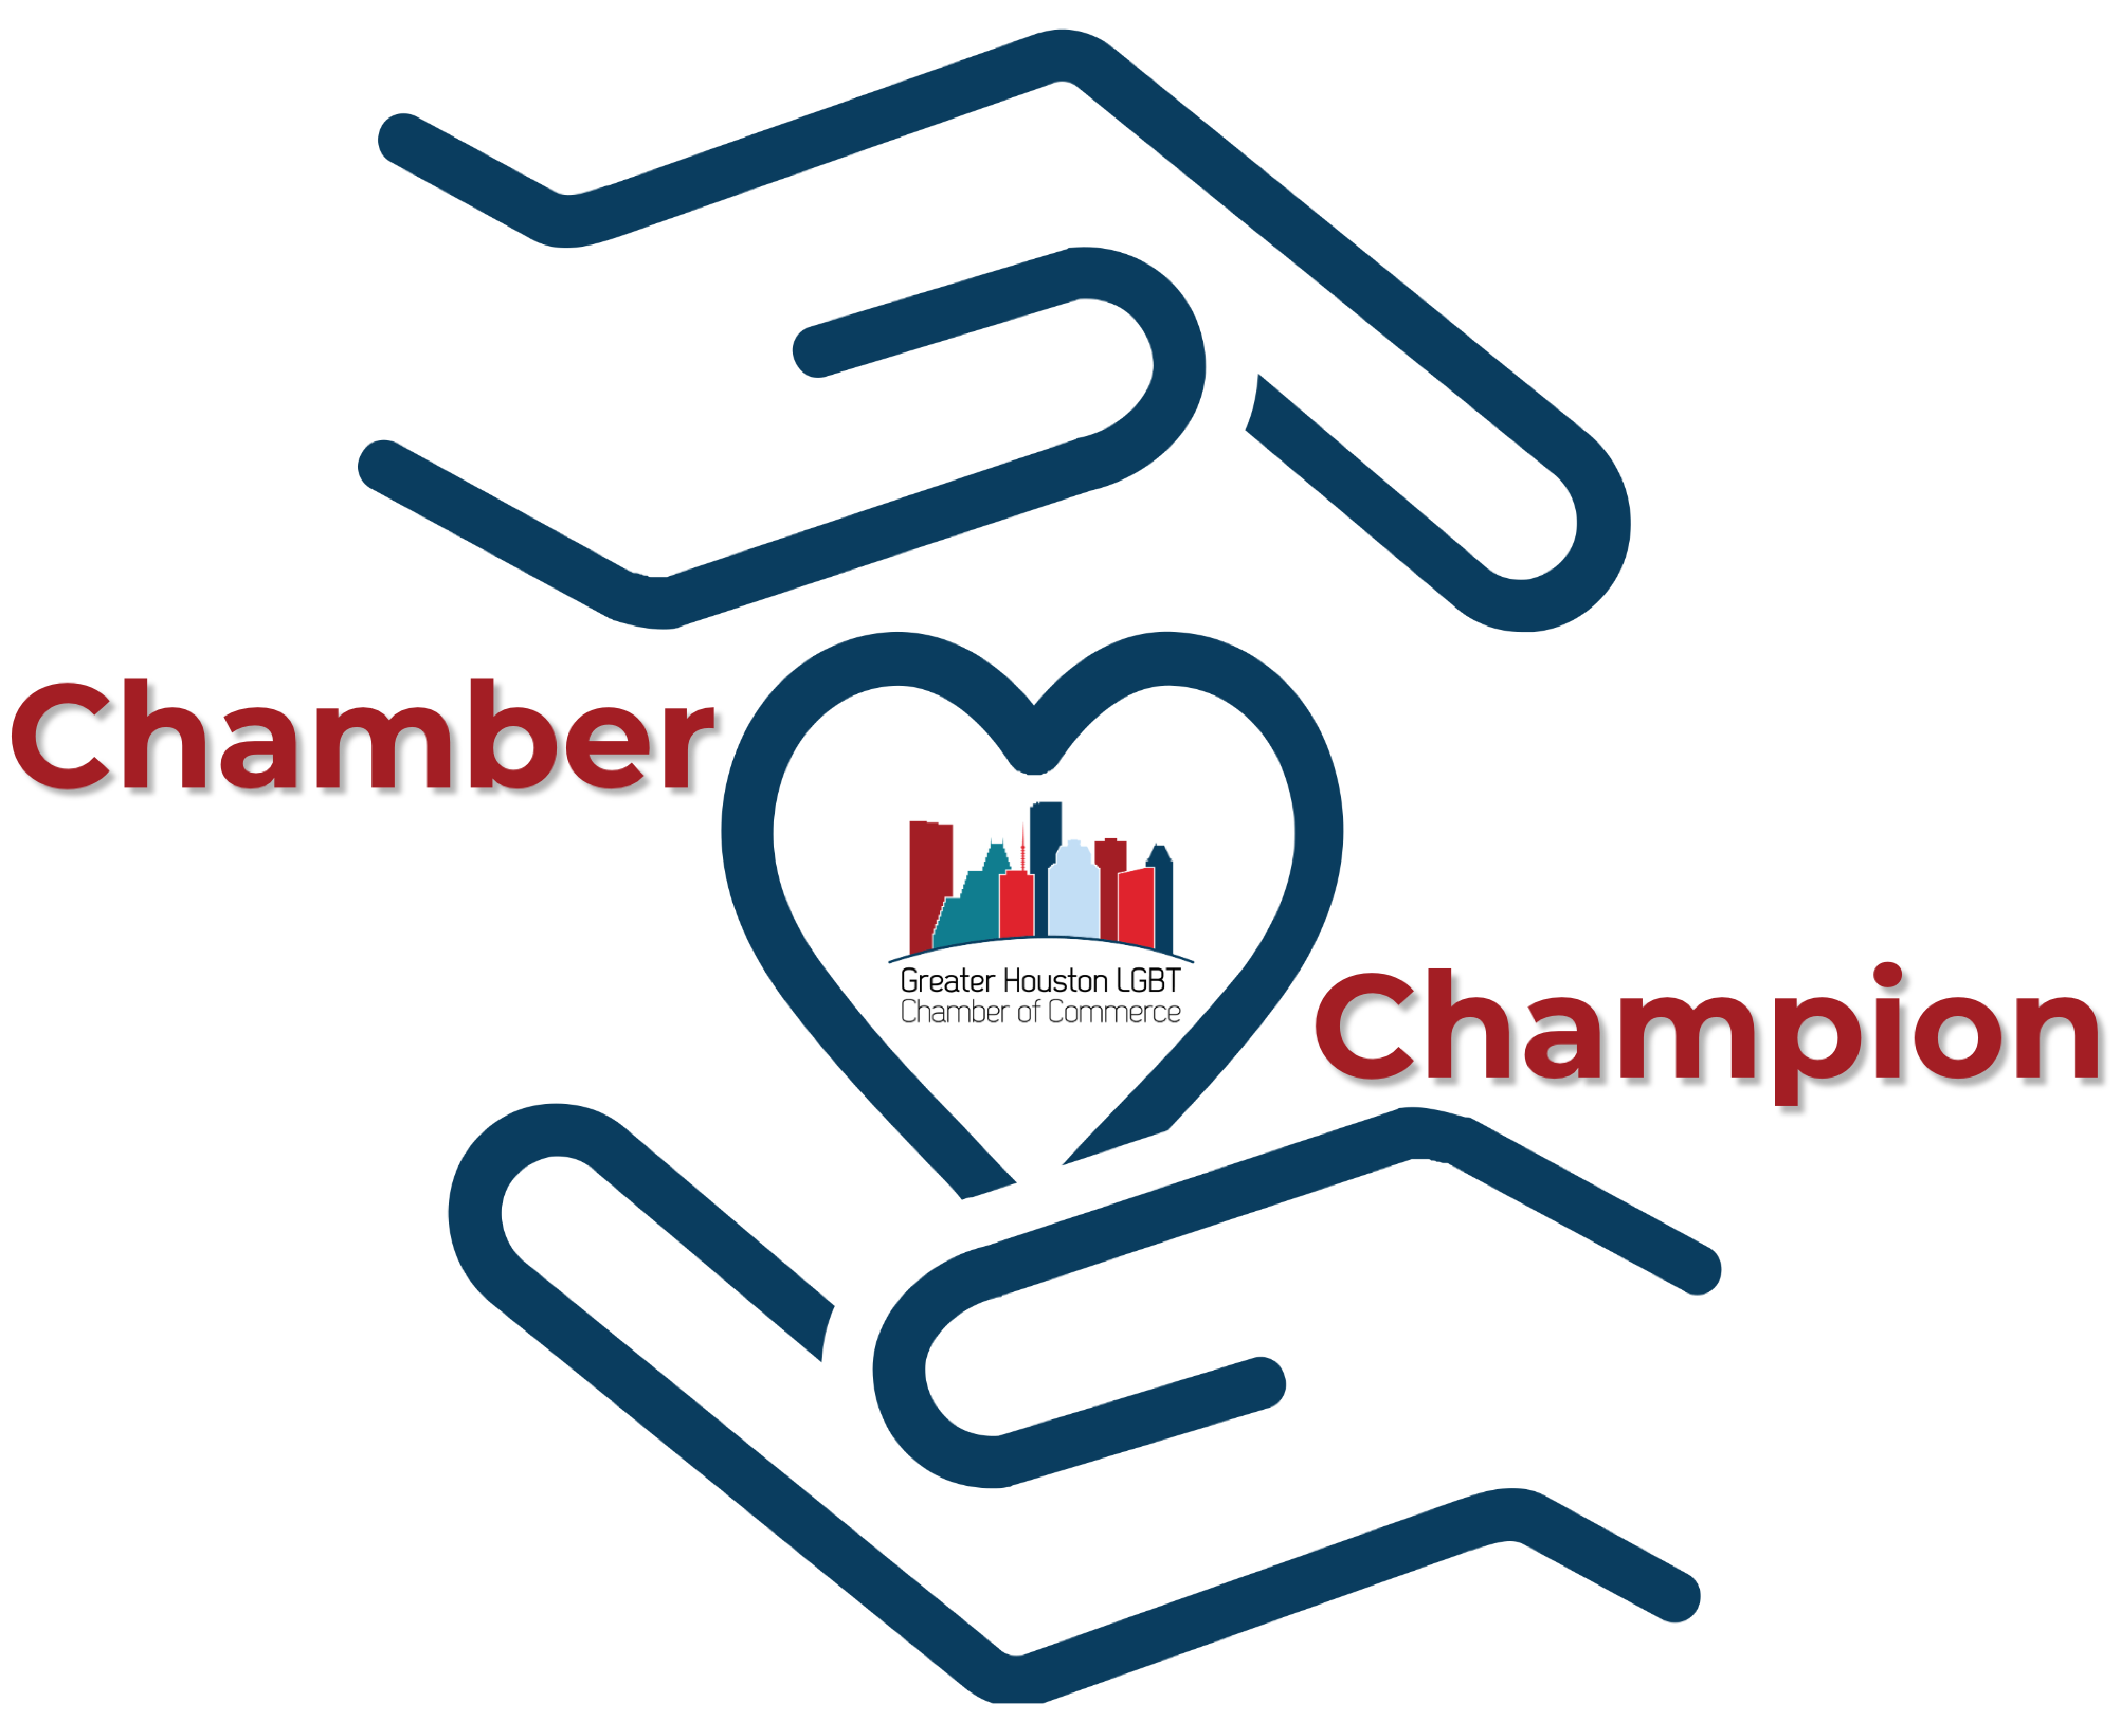 Chamber Champion logo 4.21.23 cropped